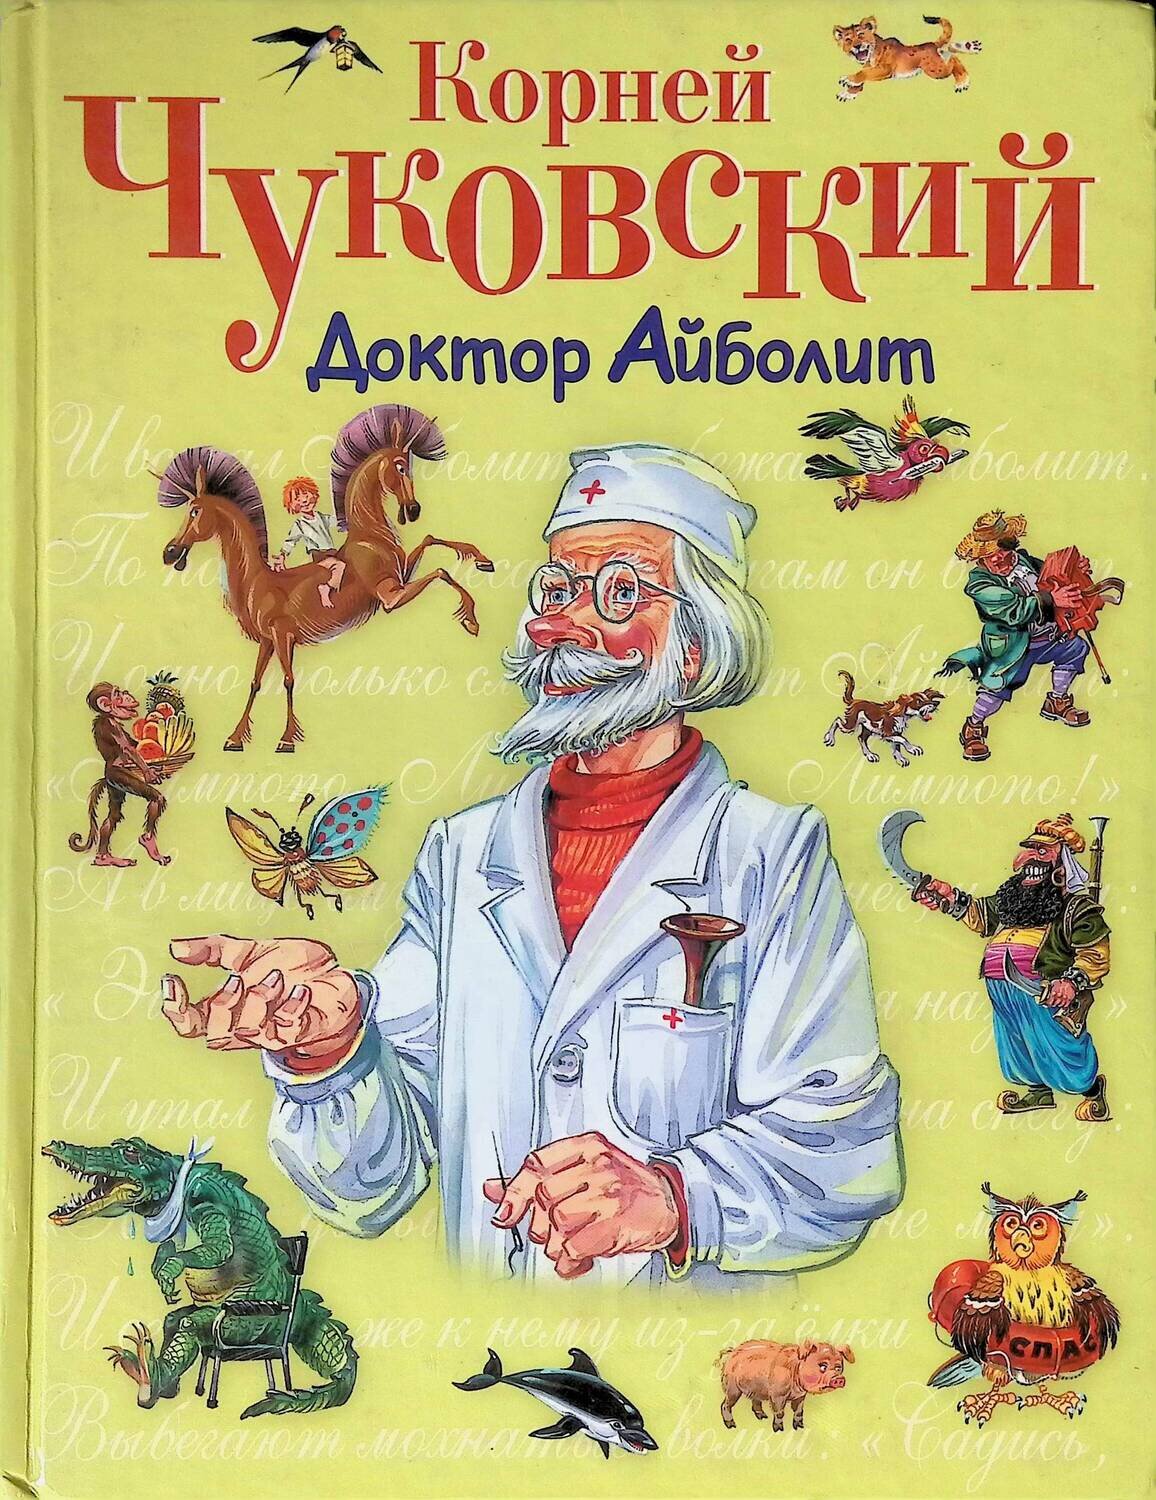 Доктор Айболит; Чуковский Корней Иванович